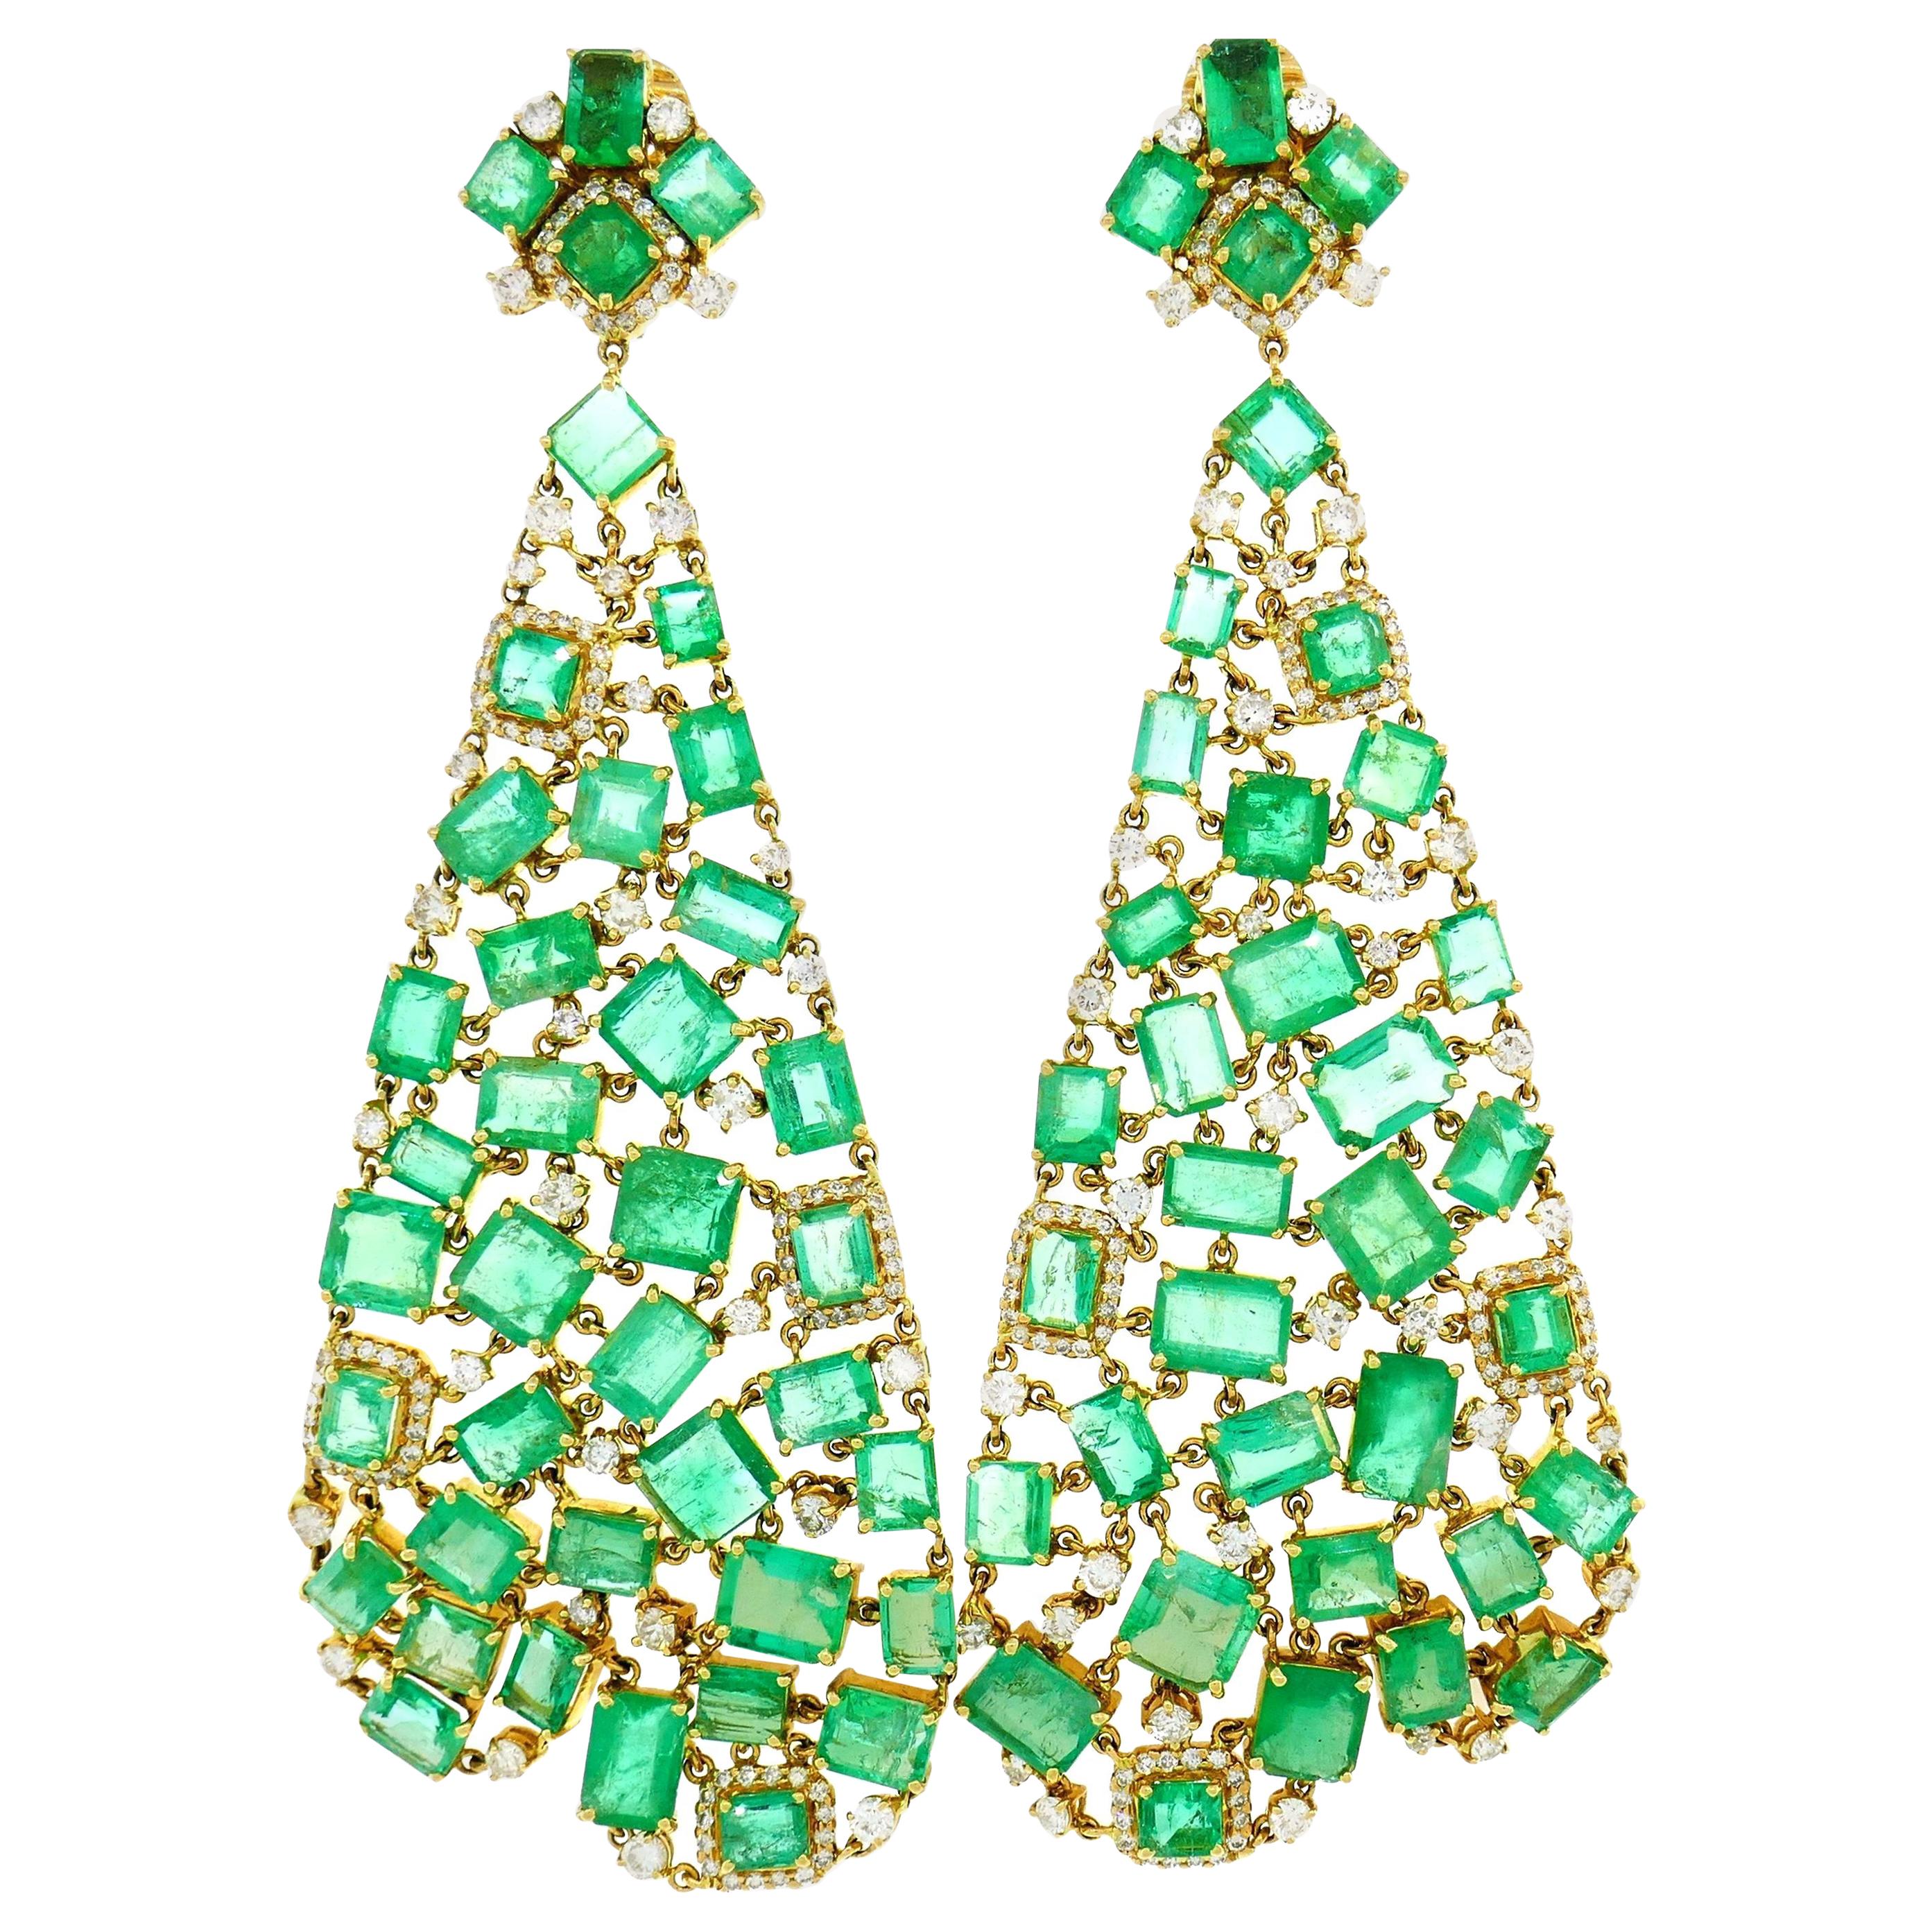 20 Carat Diamond Emerald Chandelier Earrings 18 Karat Yellow Gold For Sale